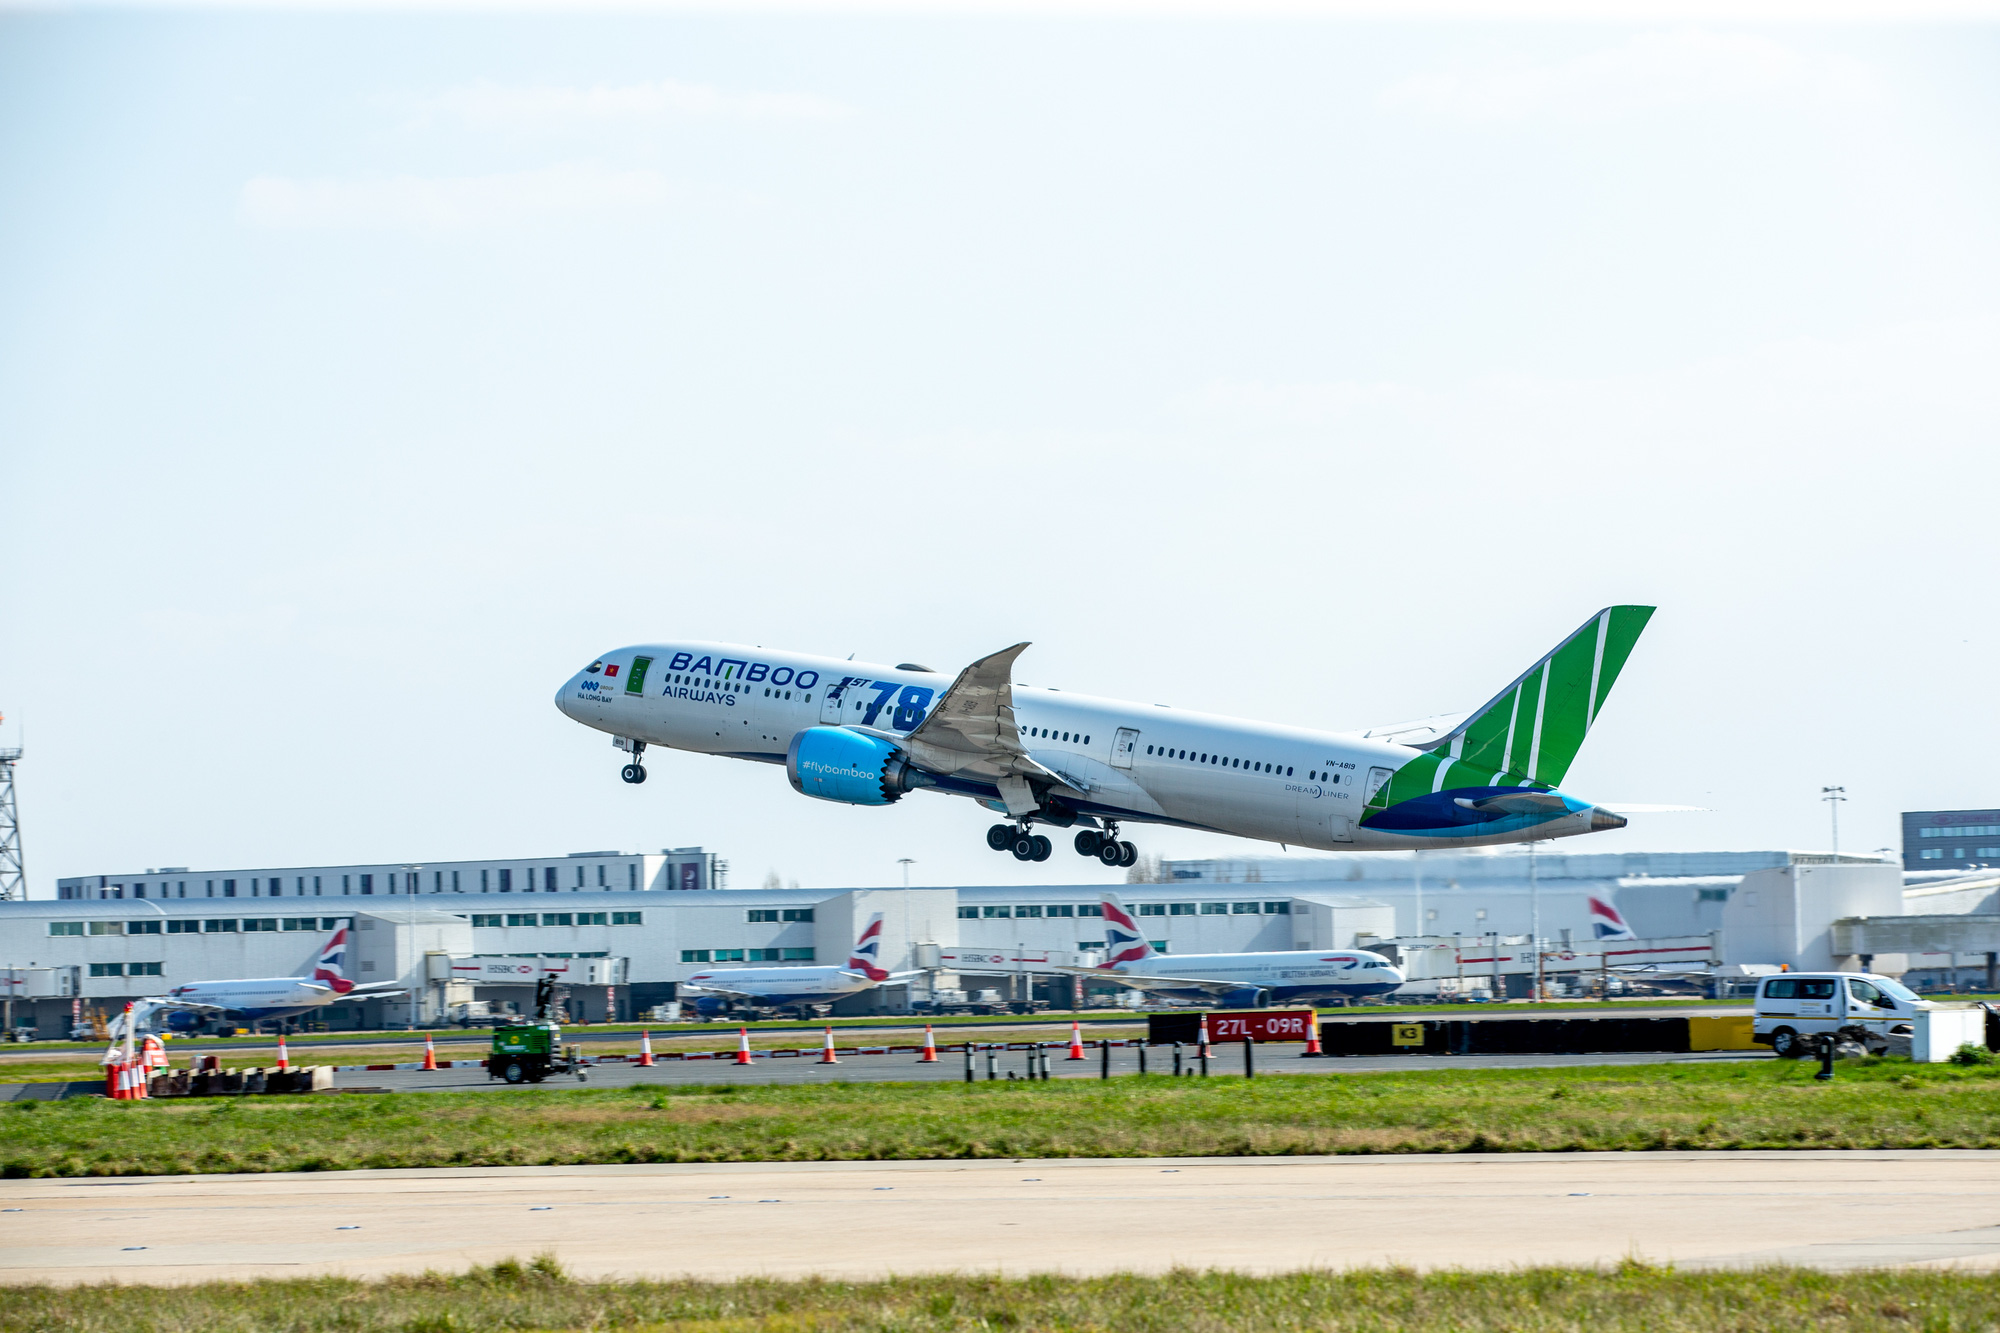 Bamboo Airways kết nối nhiều đối tác lớn, đẩy mạnh kế hoạch bay quốc tế - Ảnh 3.